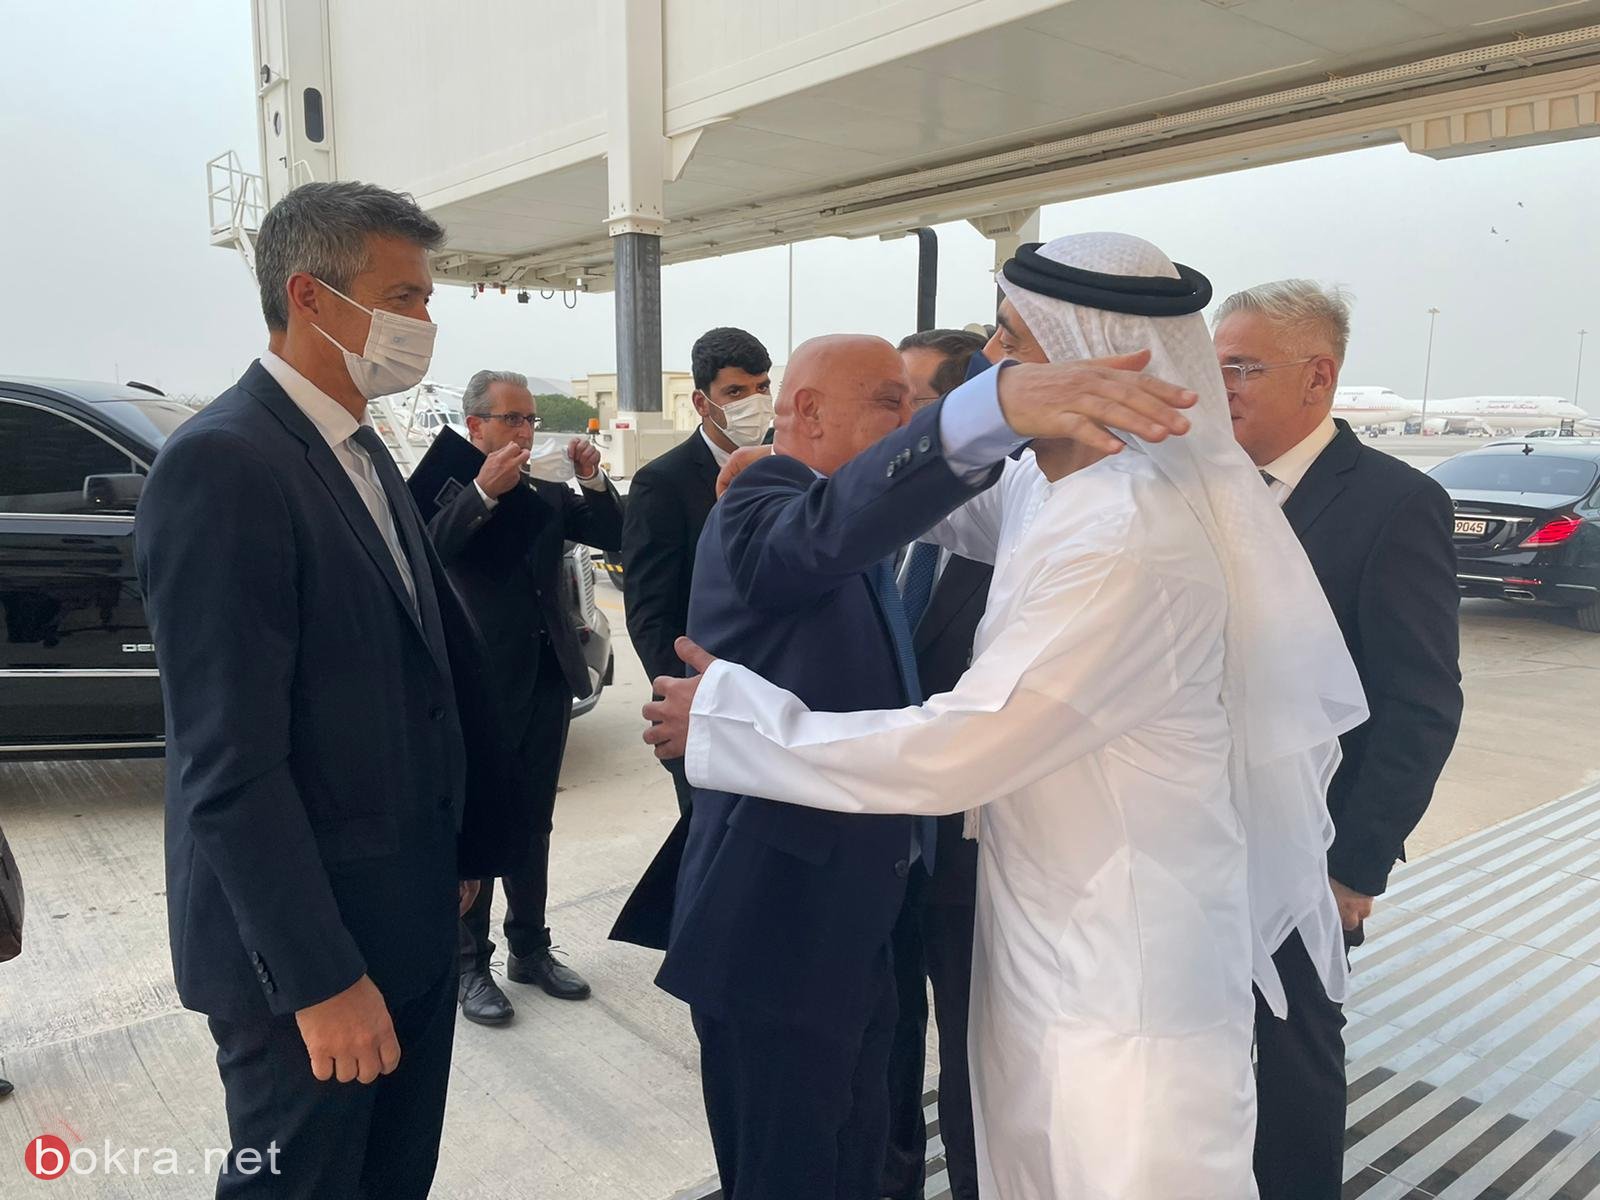 رئيس الدولة والوزيران فريج وهندل يصلون أبو ظبي لتقديم واجب العزاء-2